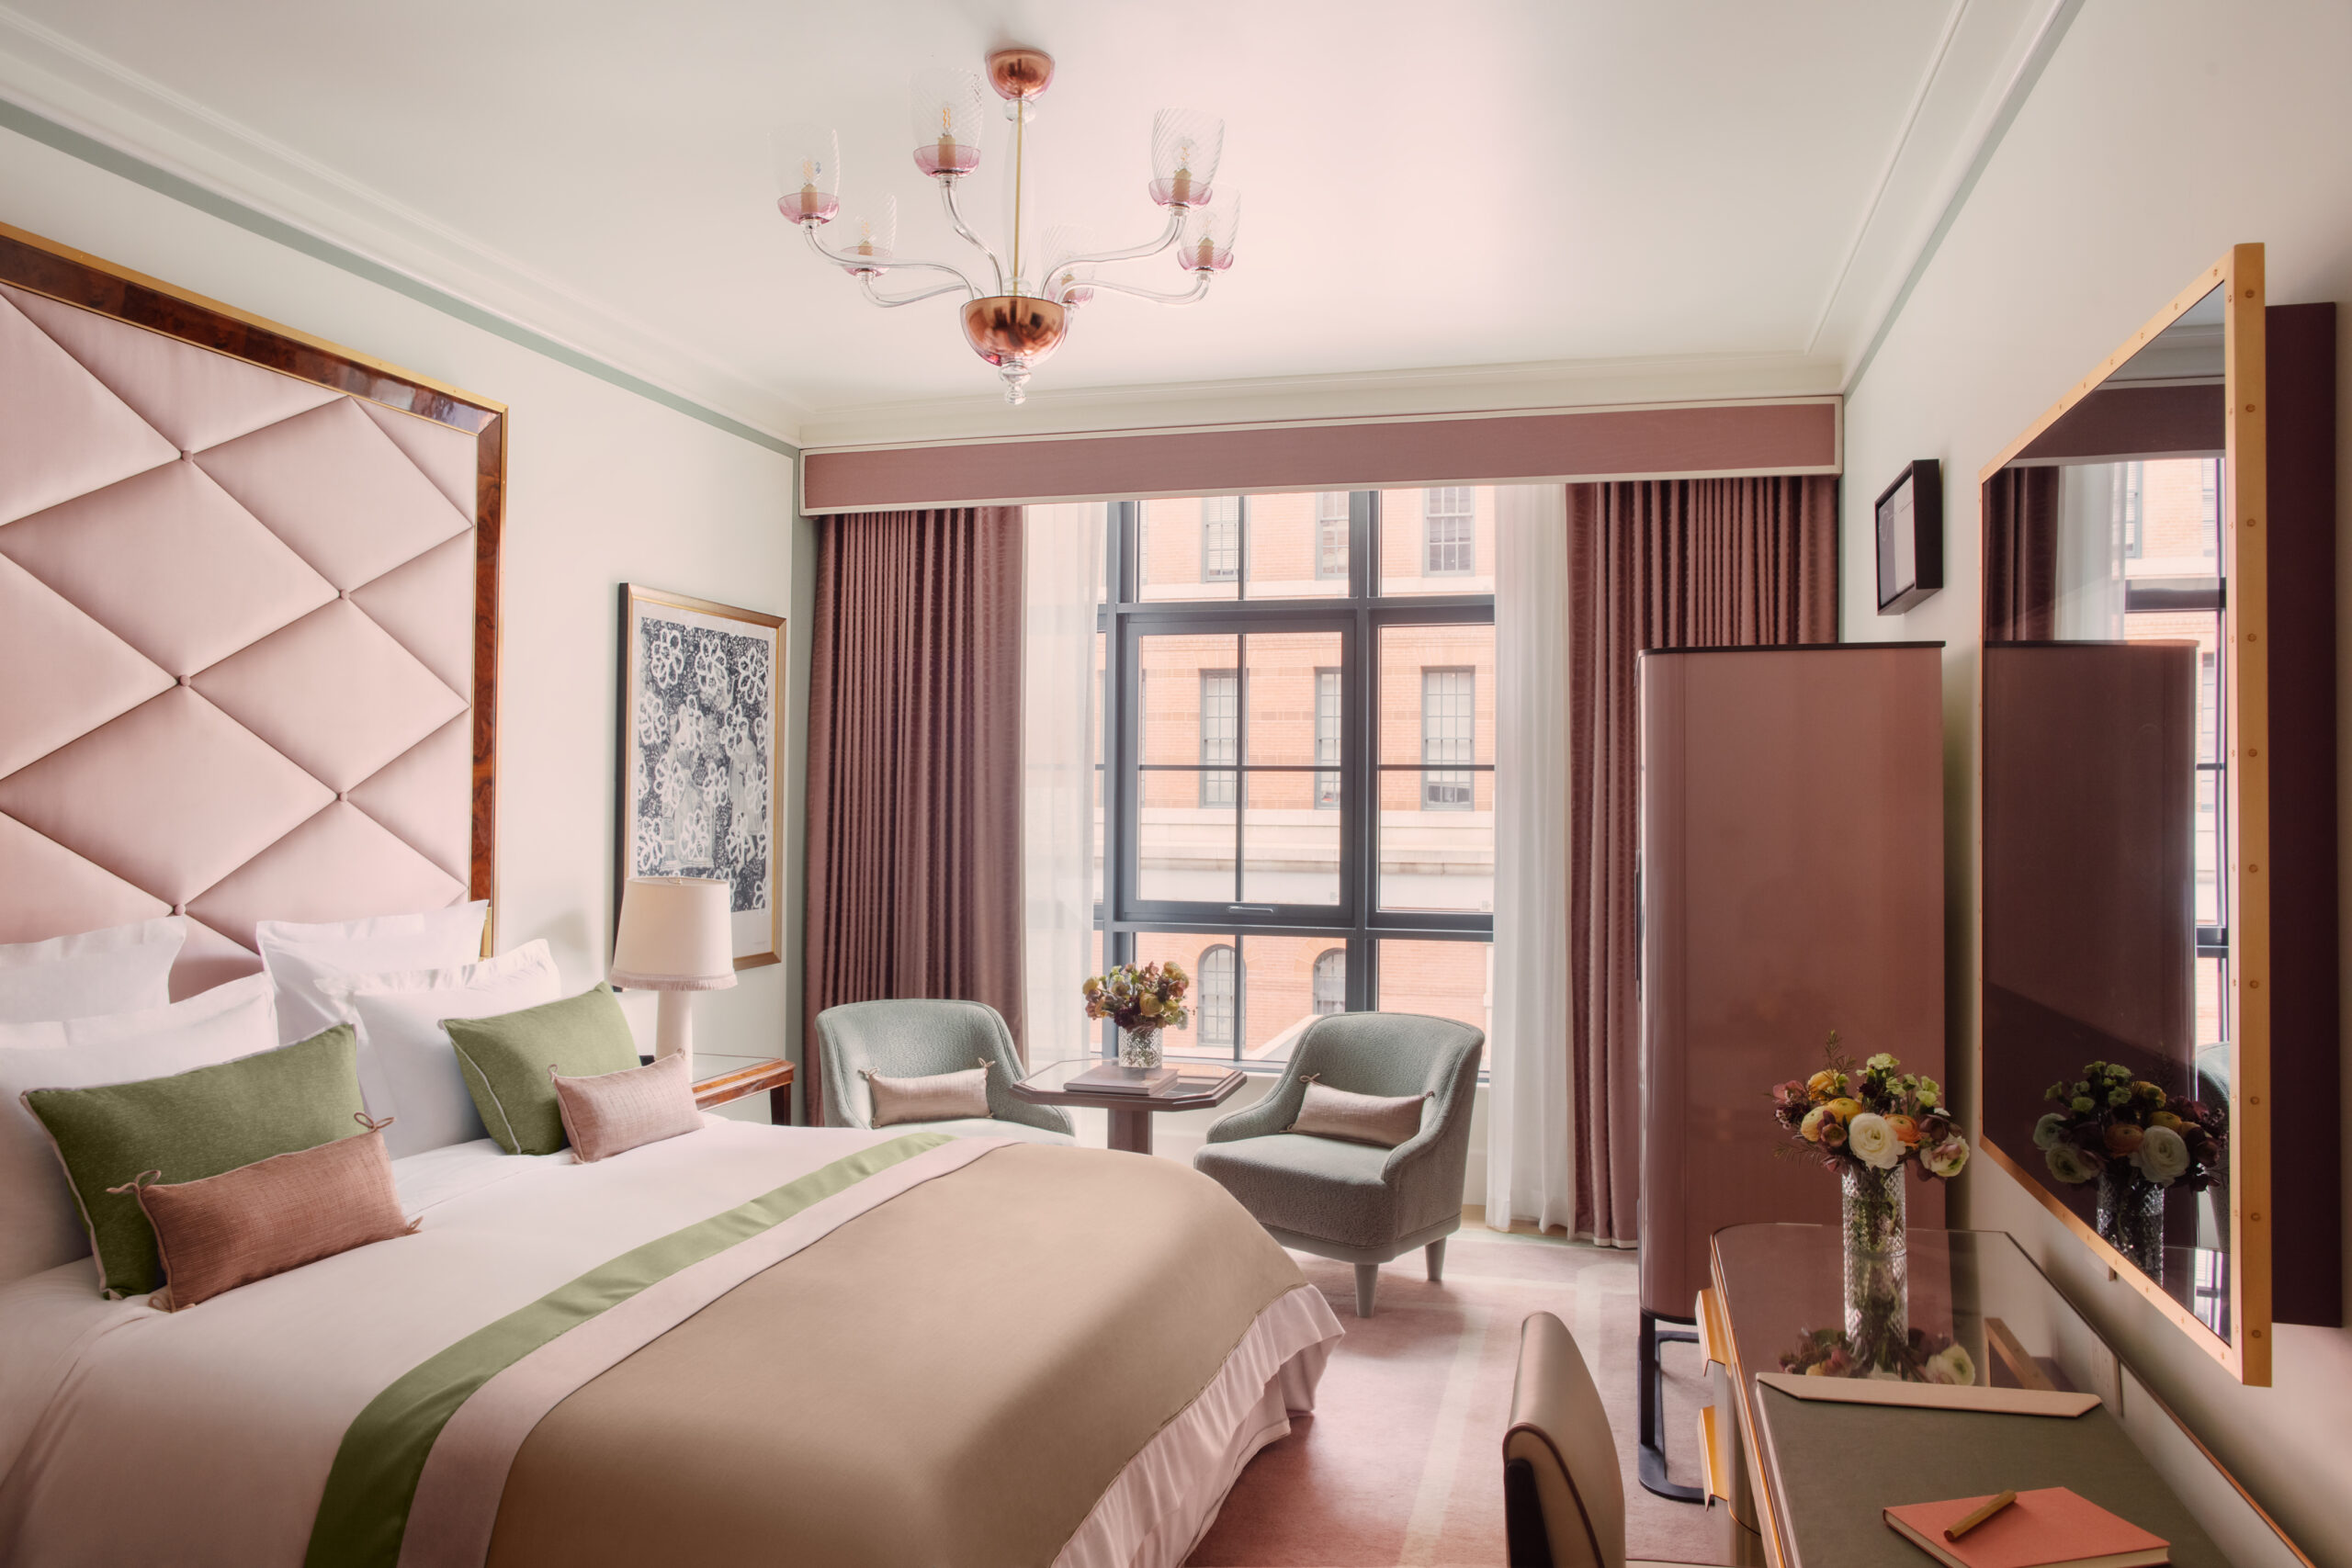 New York: une chambre douillette de l'Hôtel Barrière Fouquet's New York, aux teintes poudrées de rose, vert amande et gris perle.